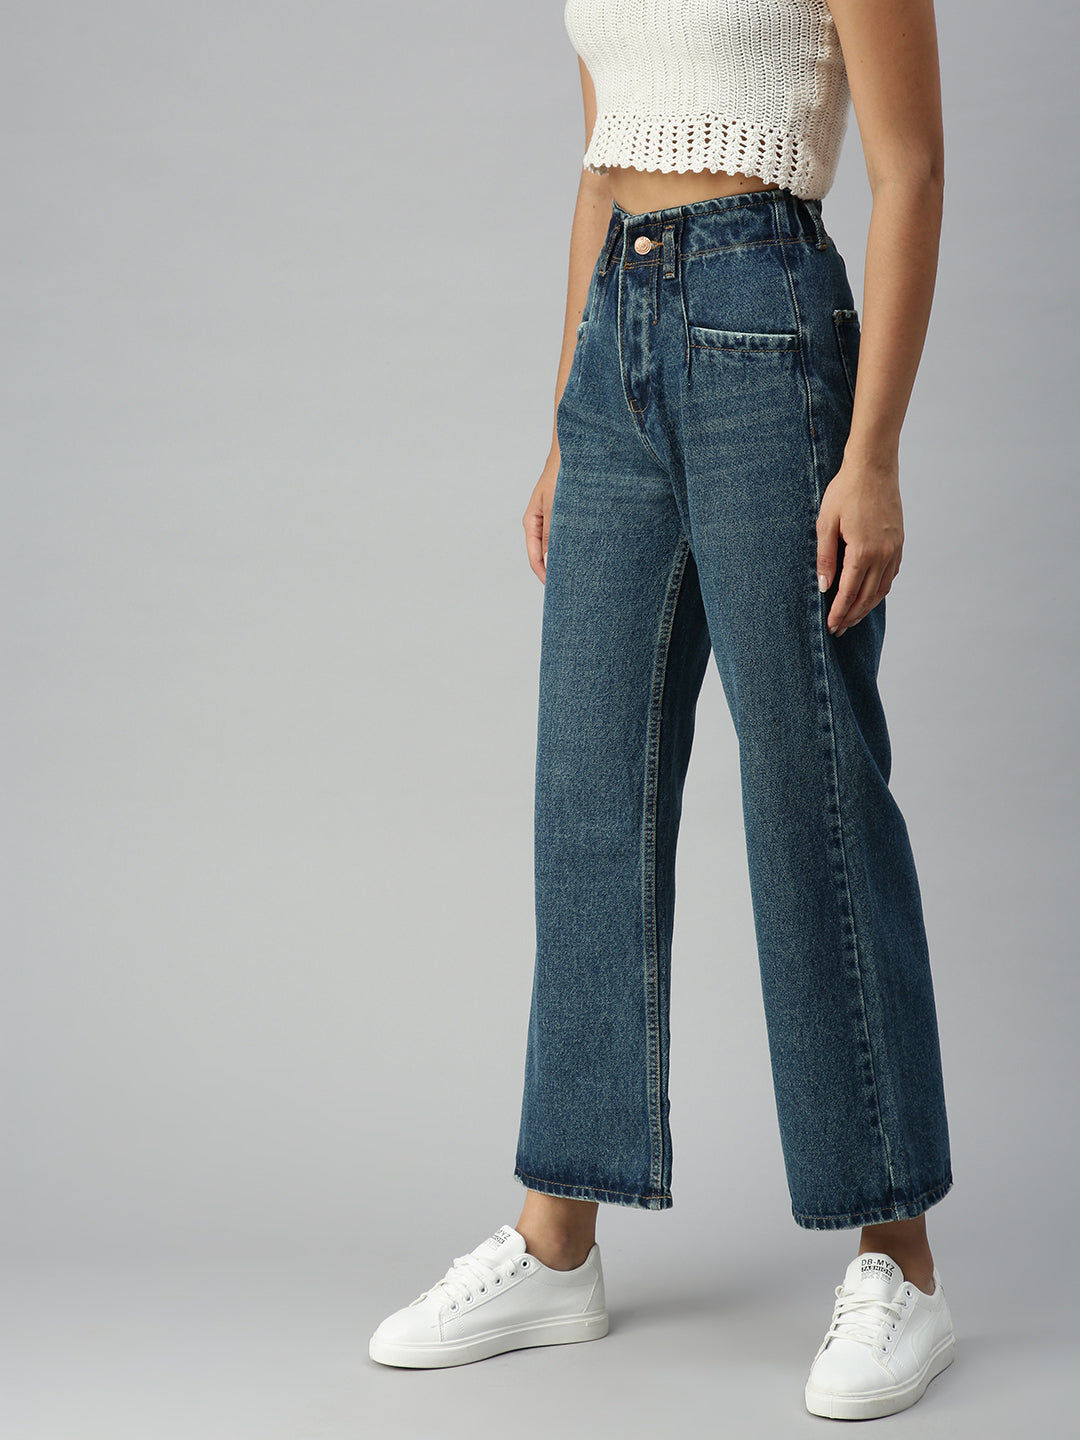 Women's Blue Solid Denim Wide Leg Jeans